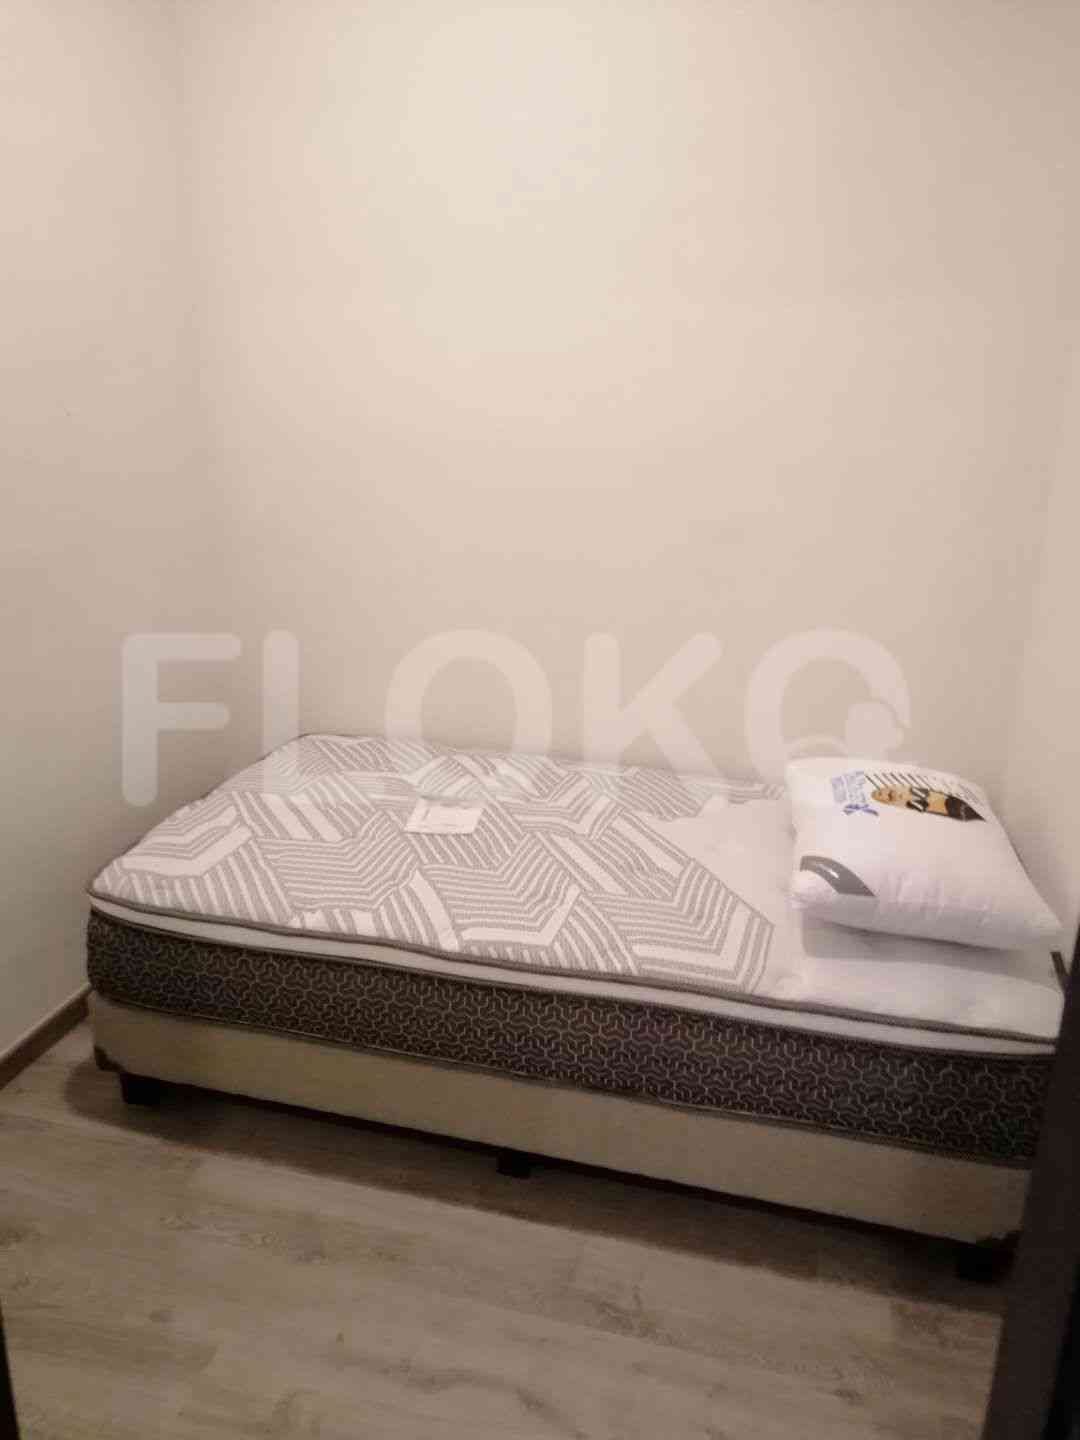 2 Bedroom on 18th Floor for Rent in Sudirman Suites Jakarta - fsu69e 6